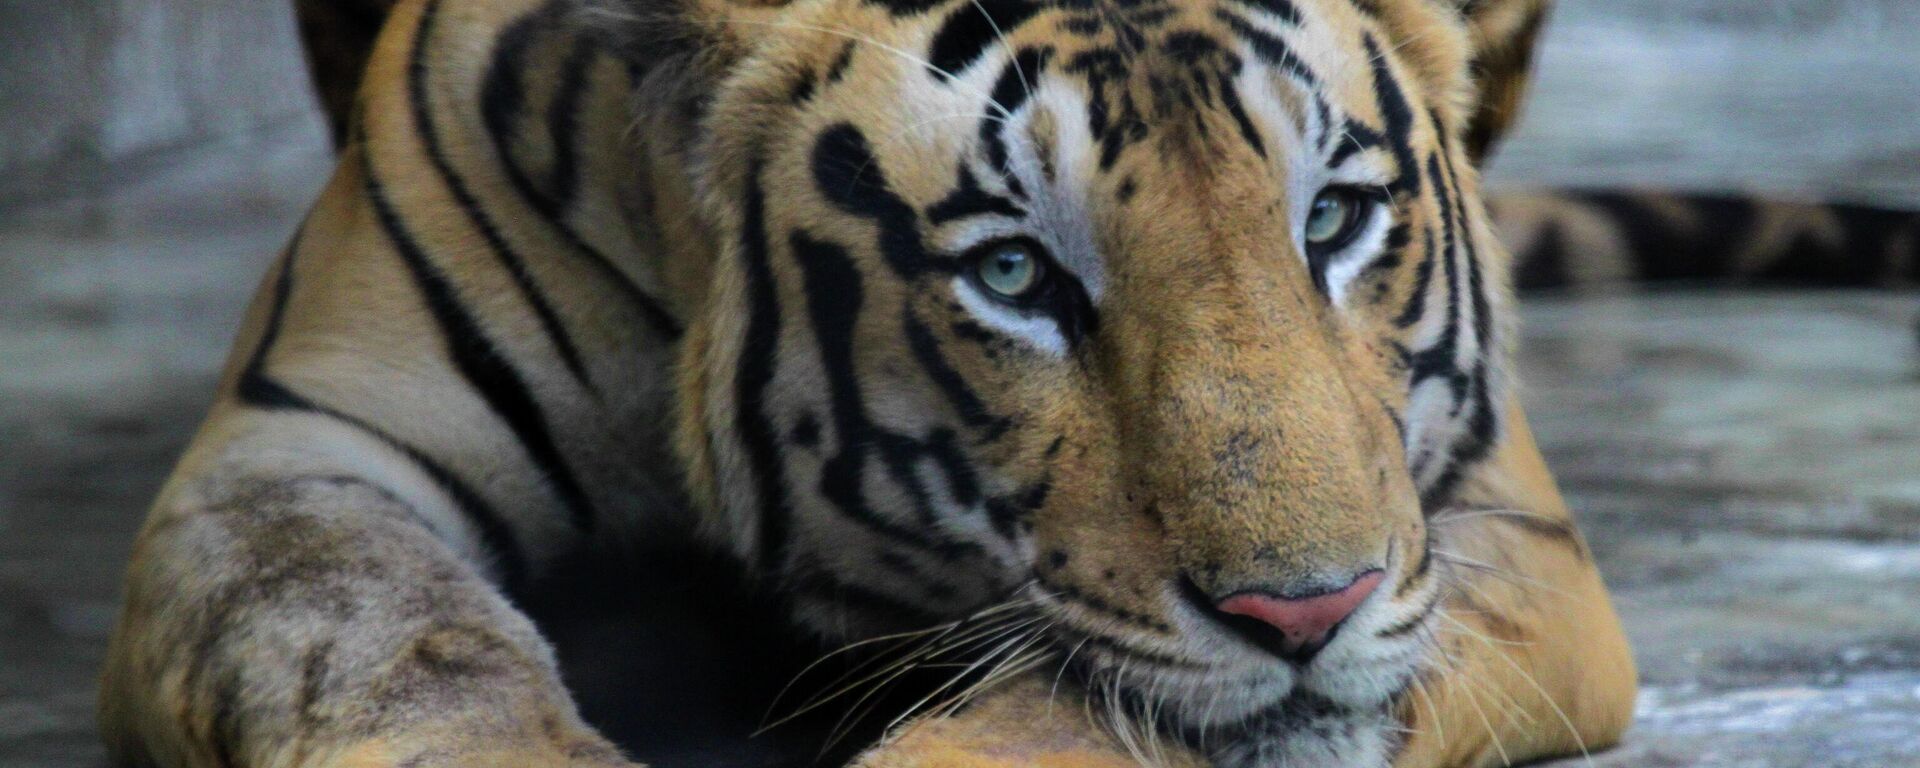 A Royal Bengal tiger rests at its enclosure at the Alipore zoo in Kolkata, India, Monday, July 29, 2019. - Sputnik International, 1920, 17.12.2022